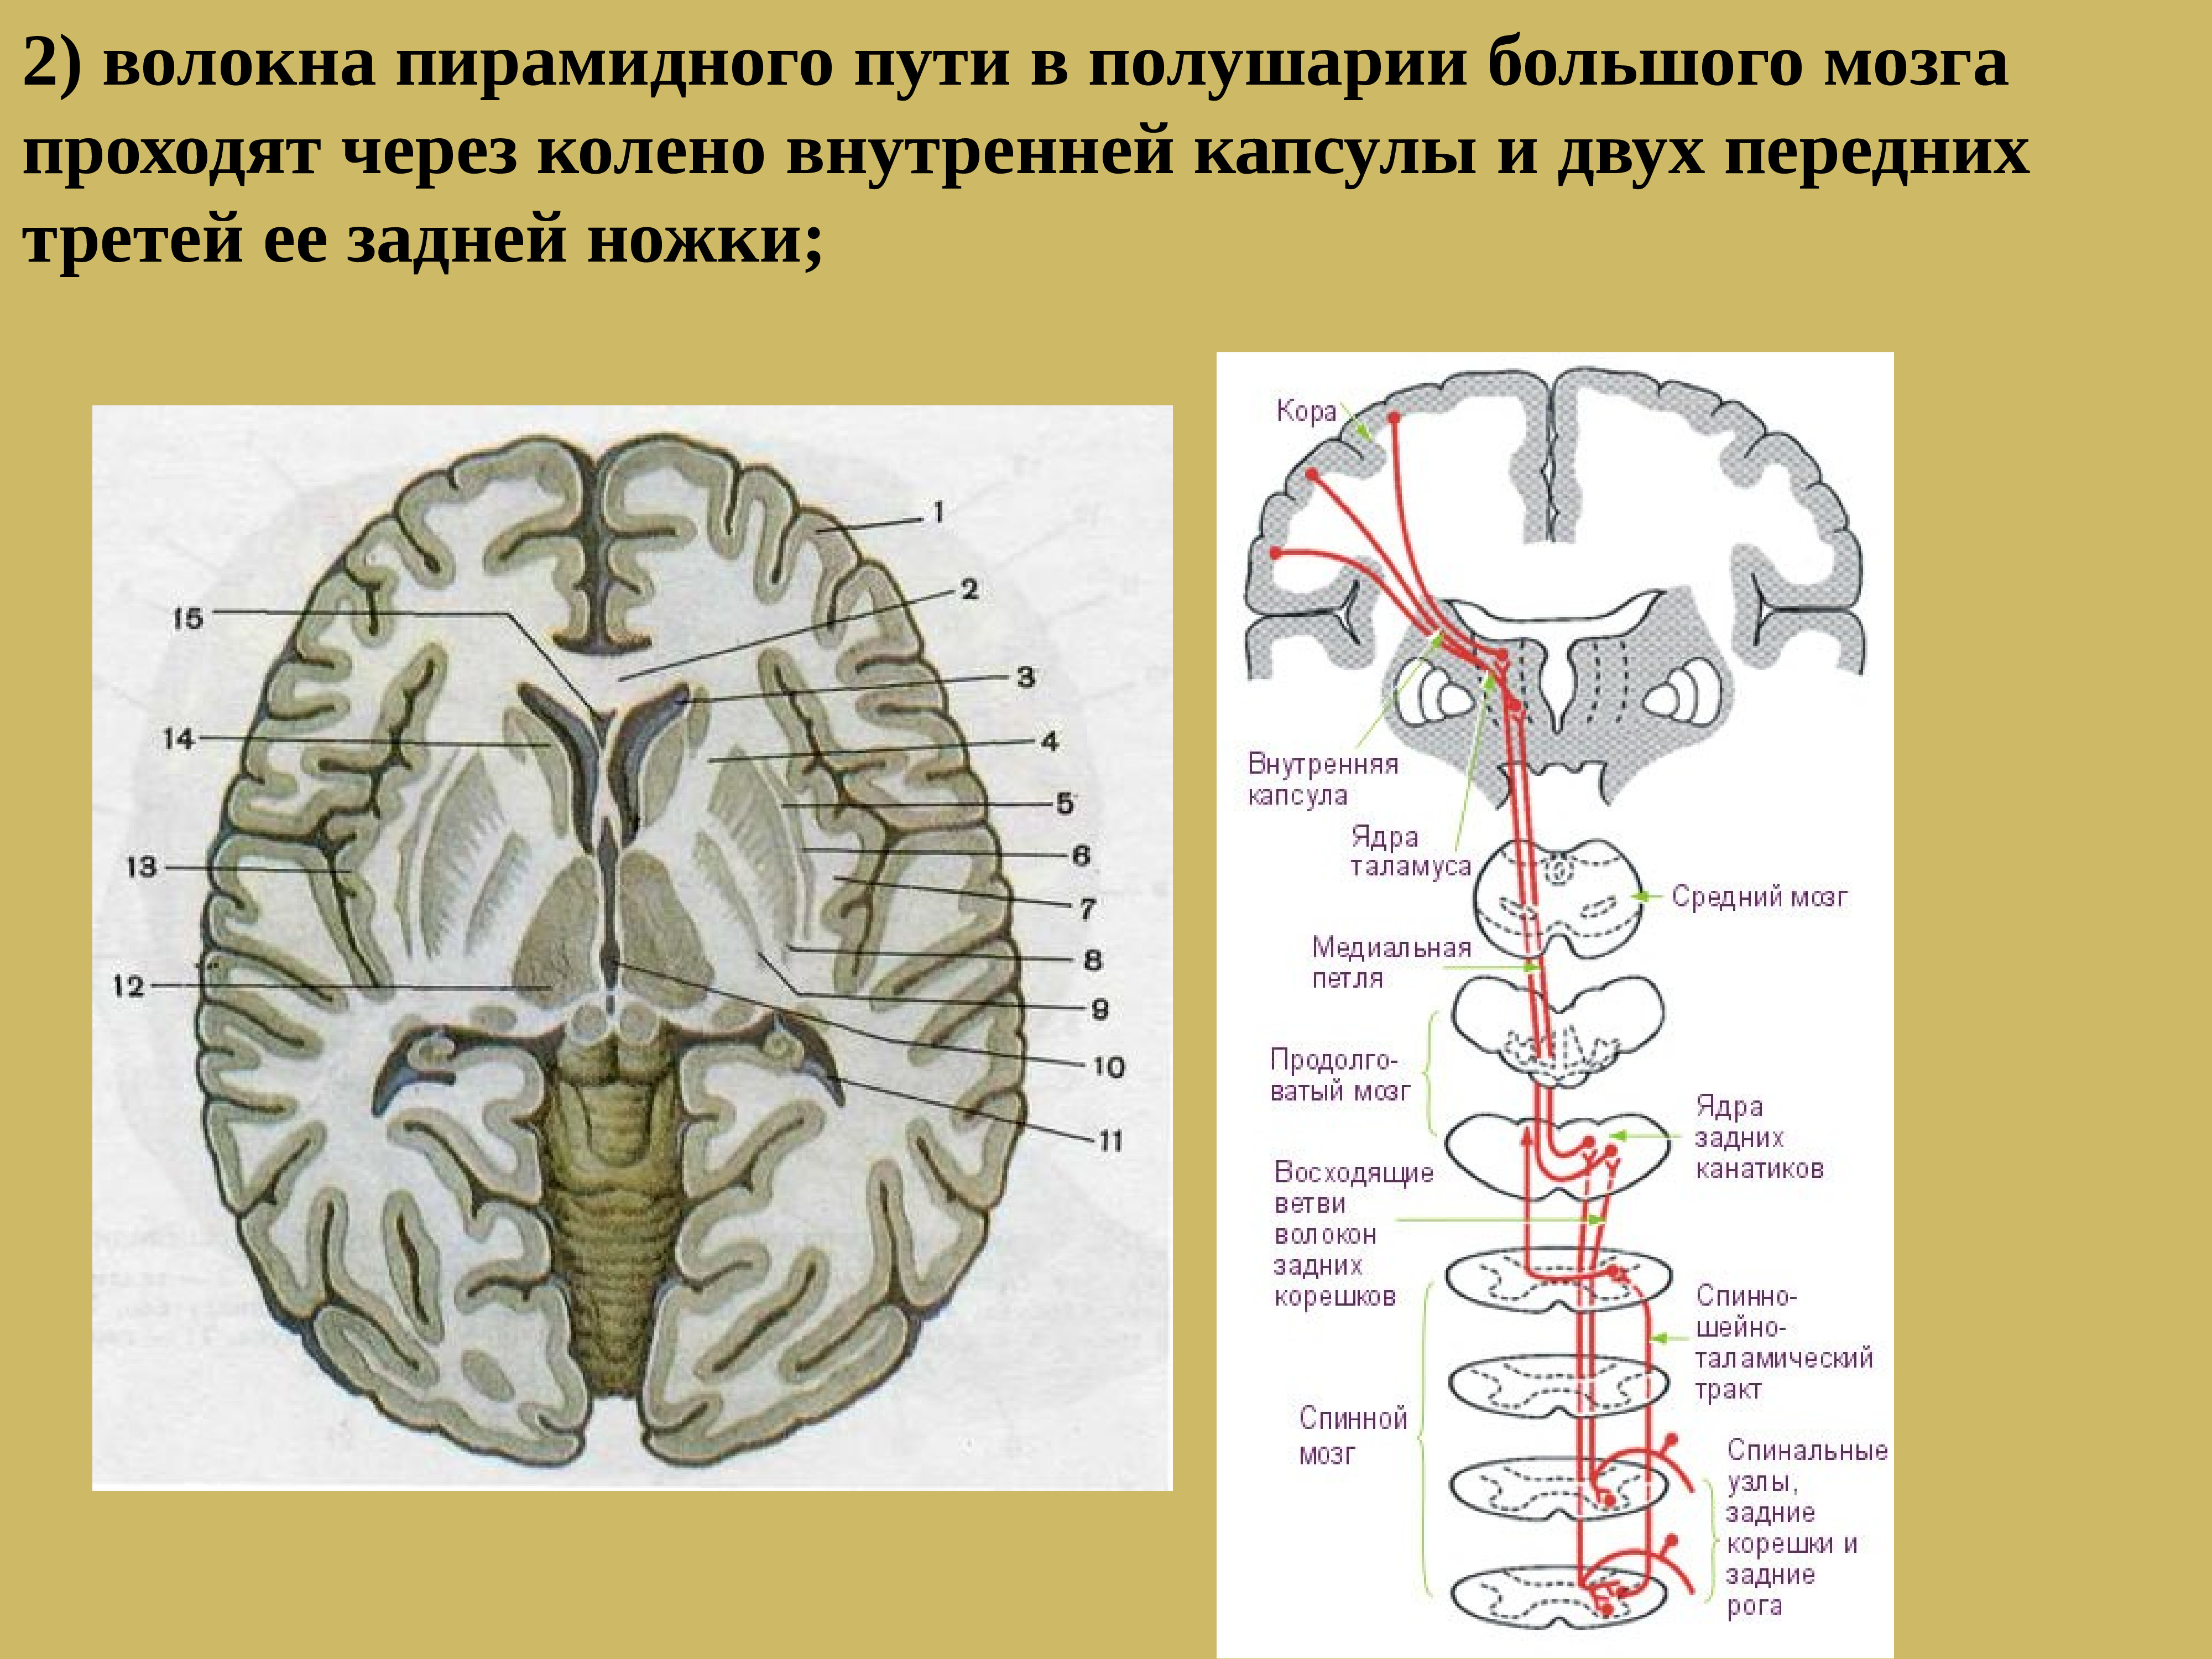 Проводящие волокна мозга. Пирамидные пути спинного мозга. Лучистый венец головного мозга и внутренняя капсула. Лучистый венец головного мозга. Пирамидные пути внутренней капсулы.